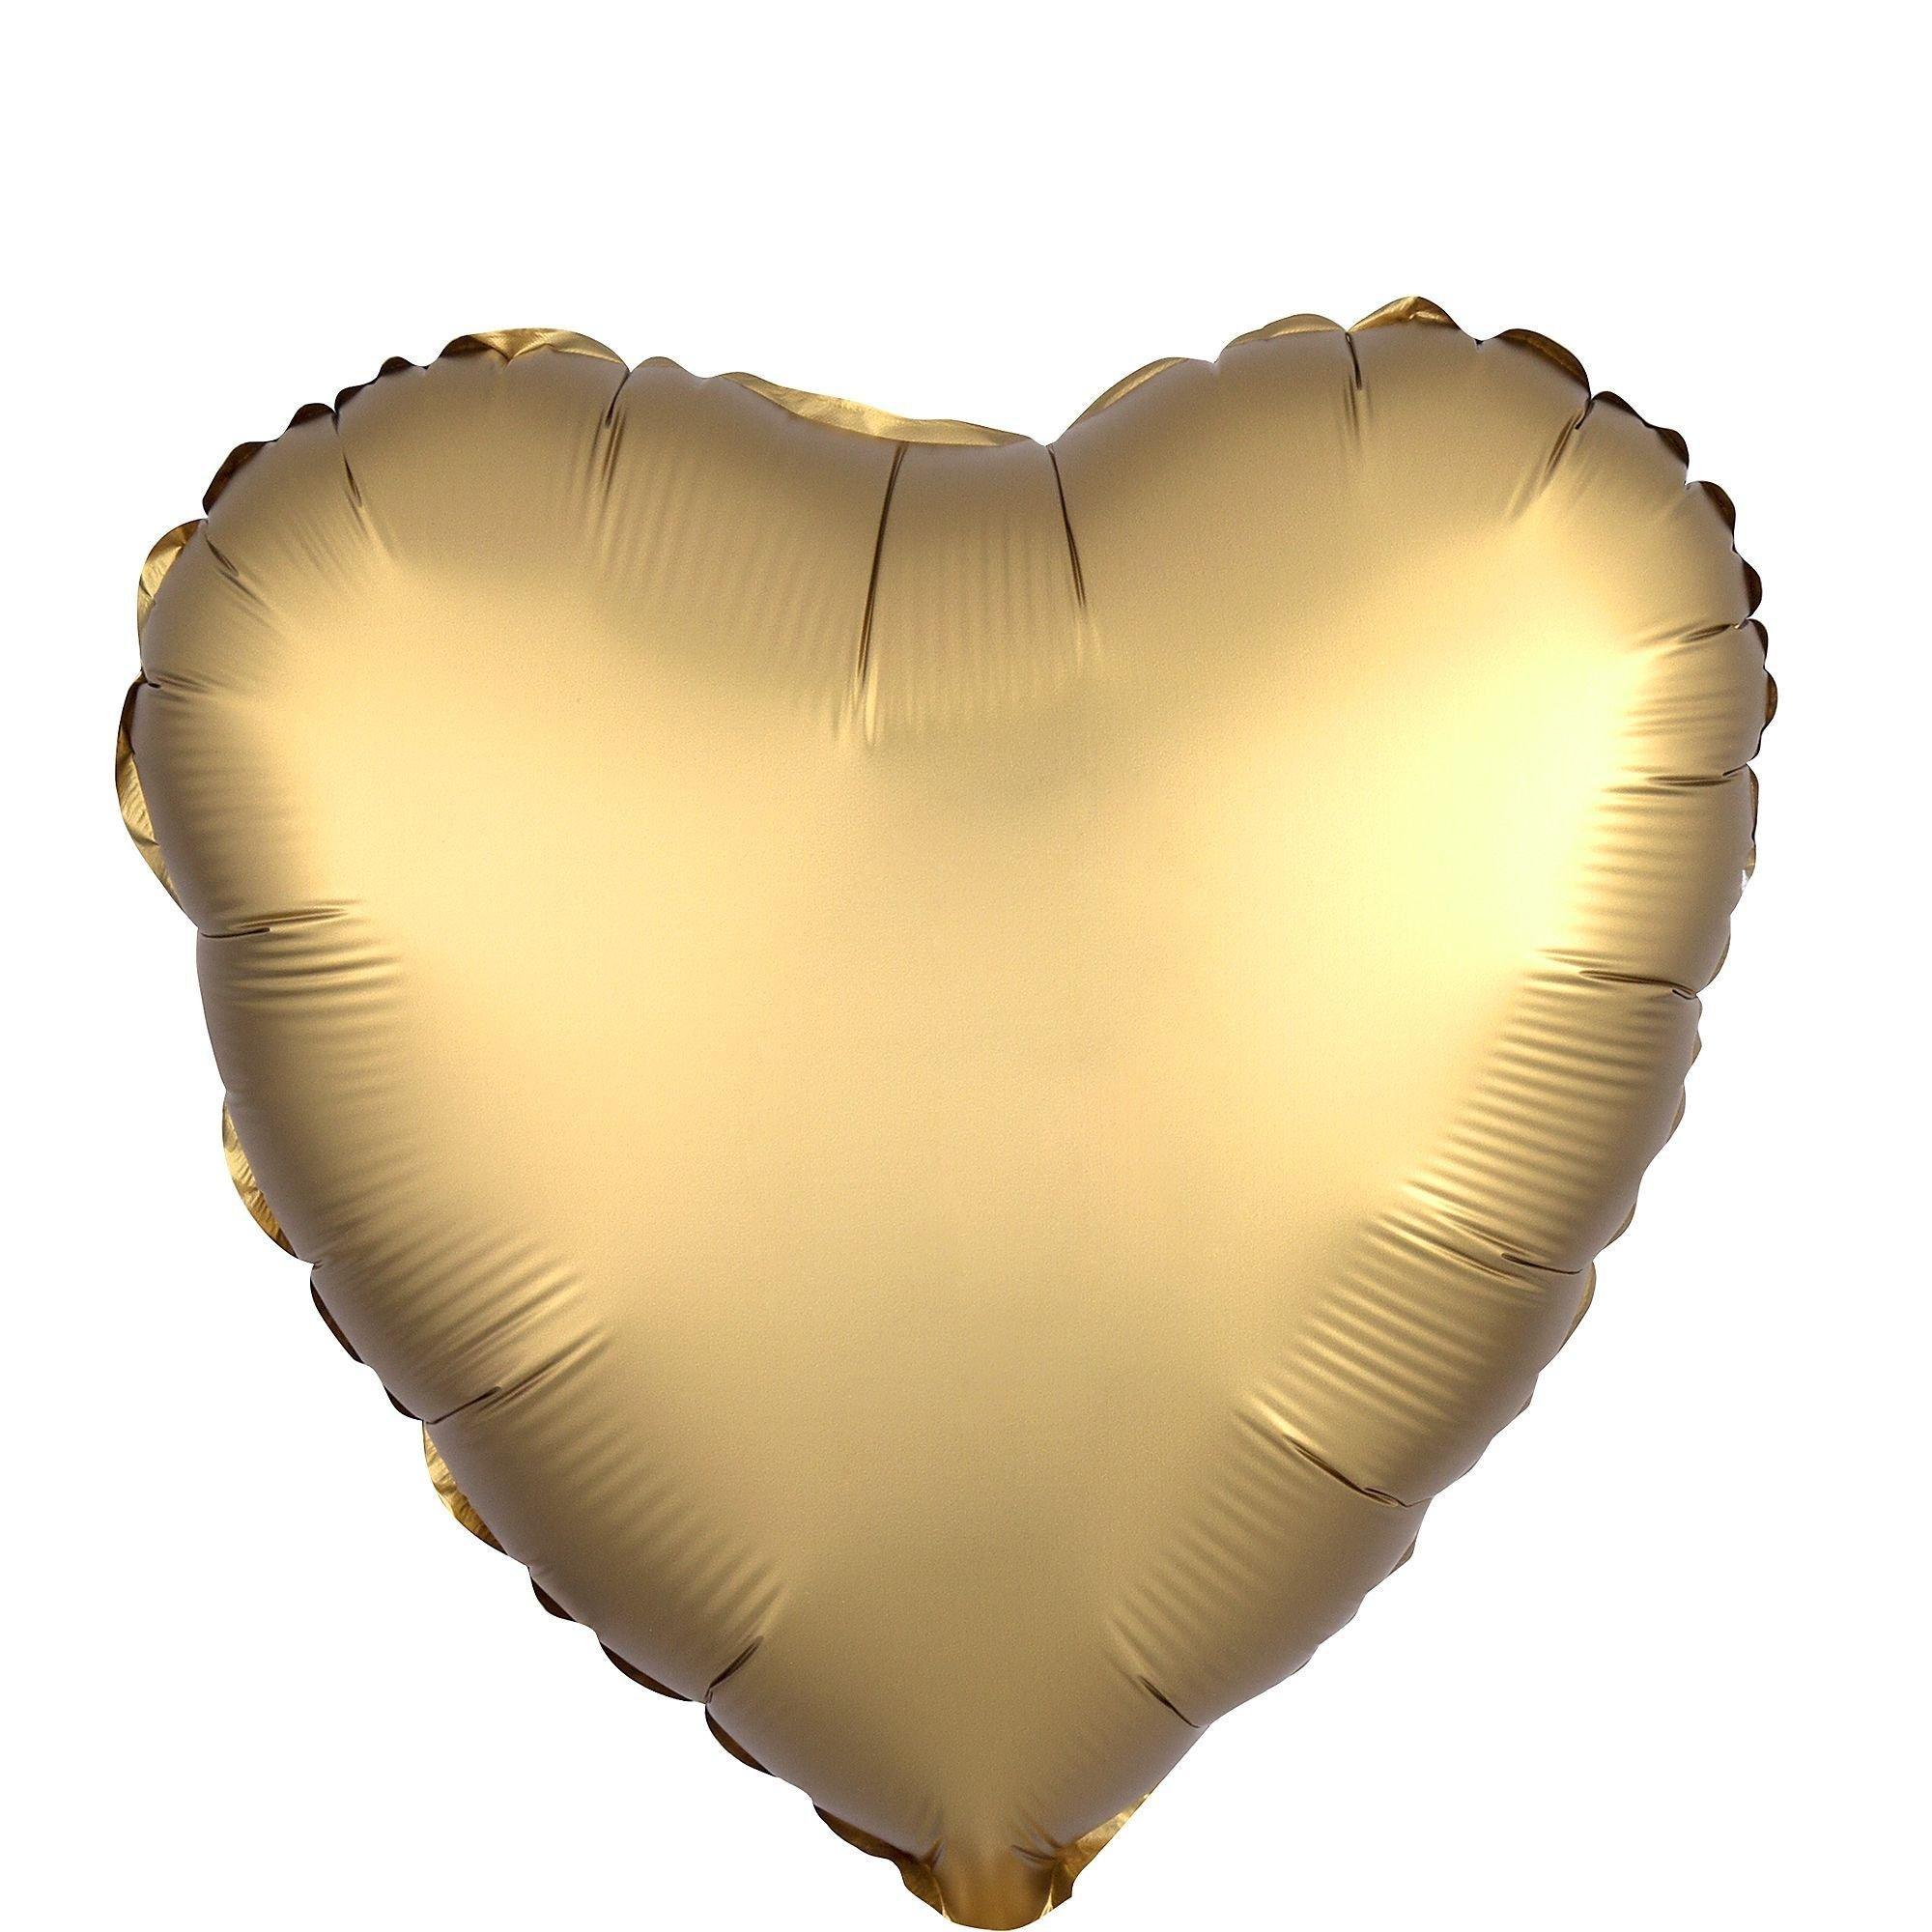 Satin Pink & Gold Heart Foil Balloon Bouquet, 12pc